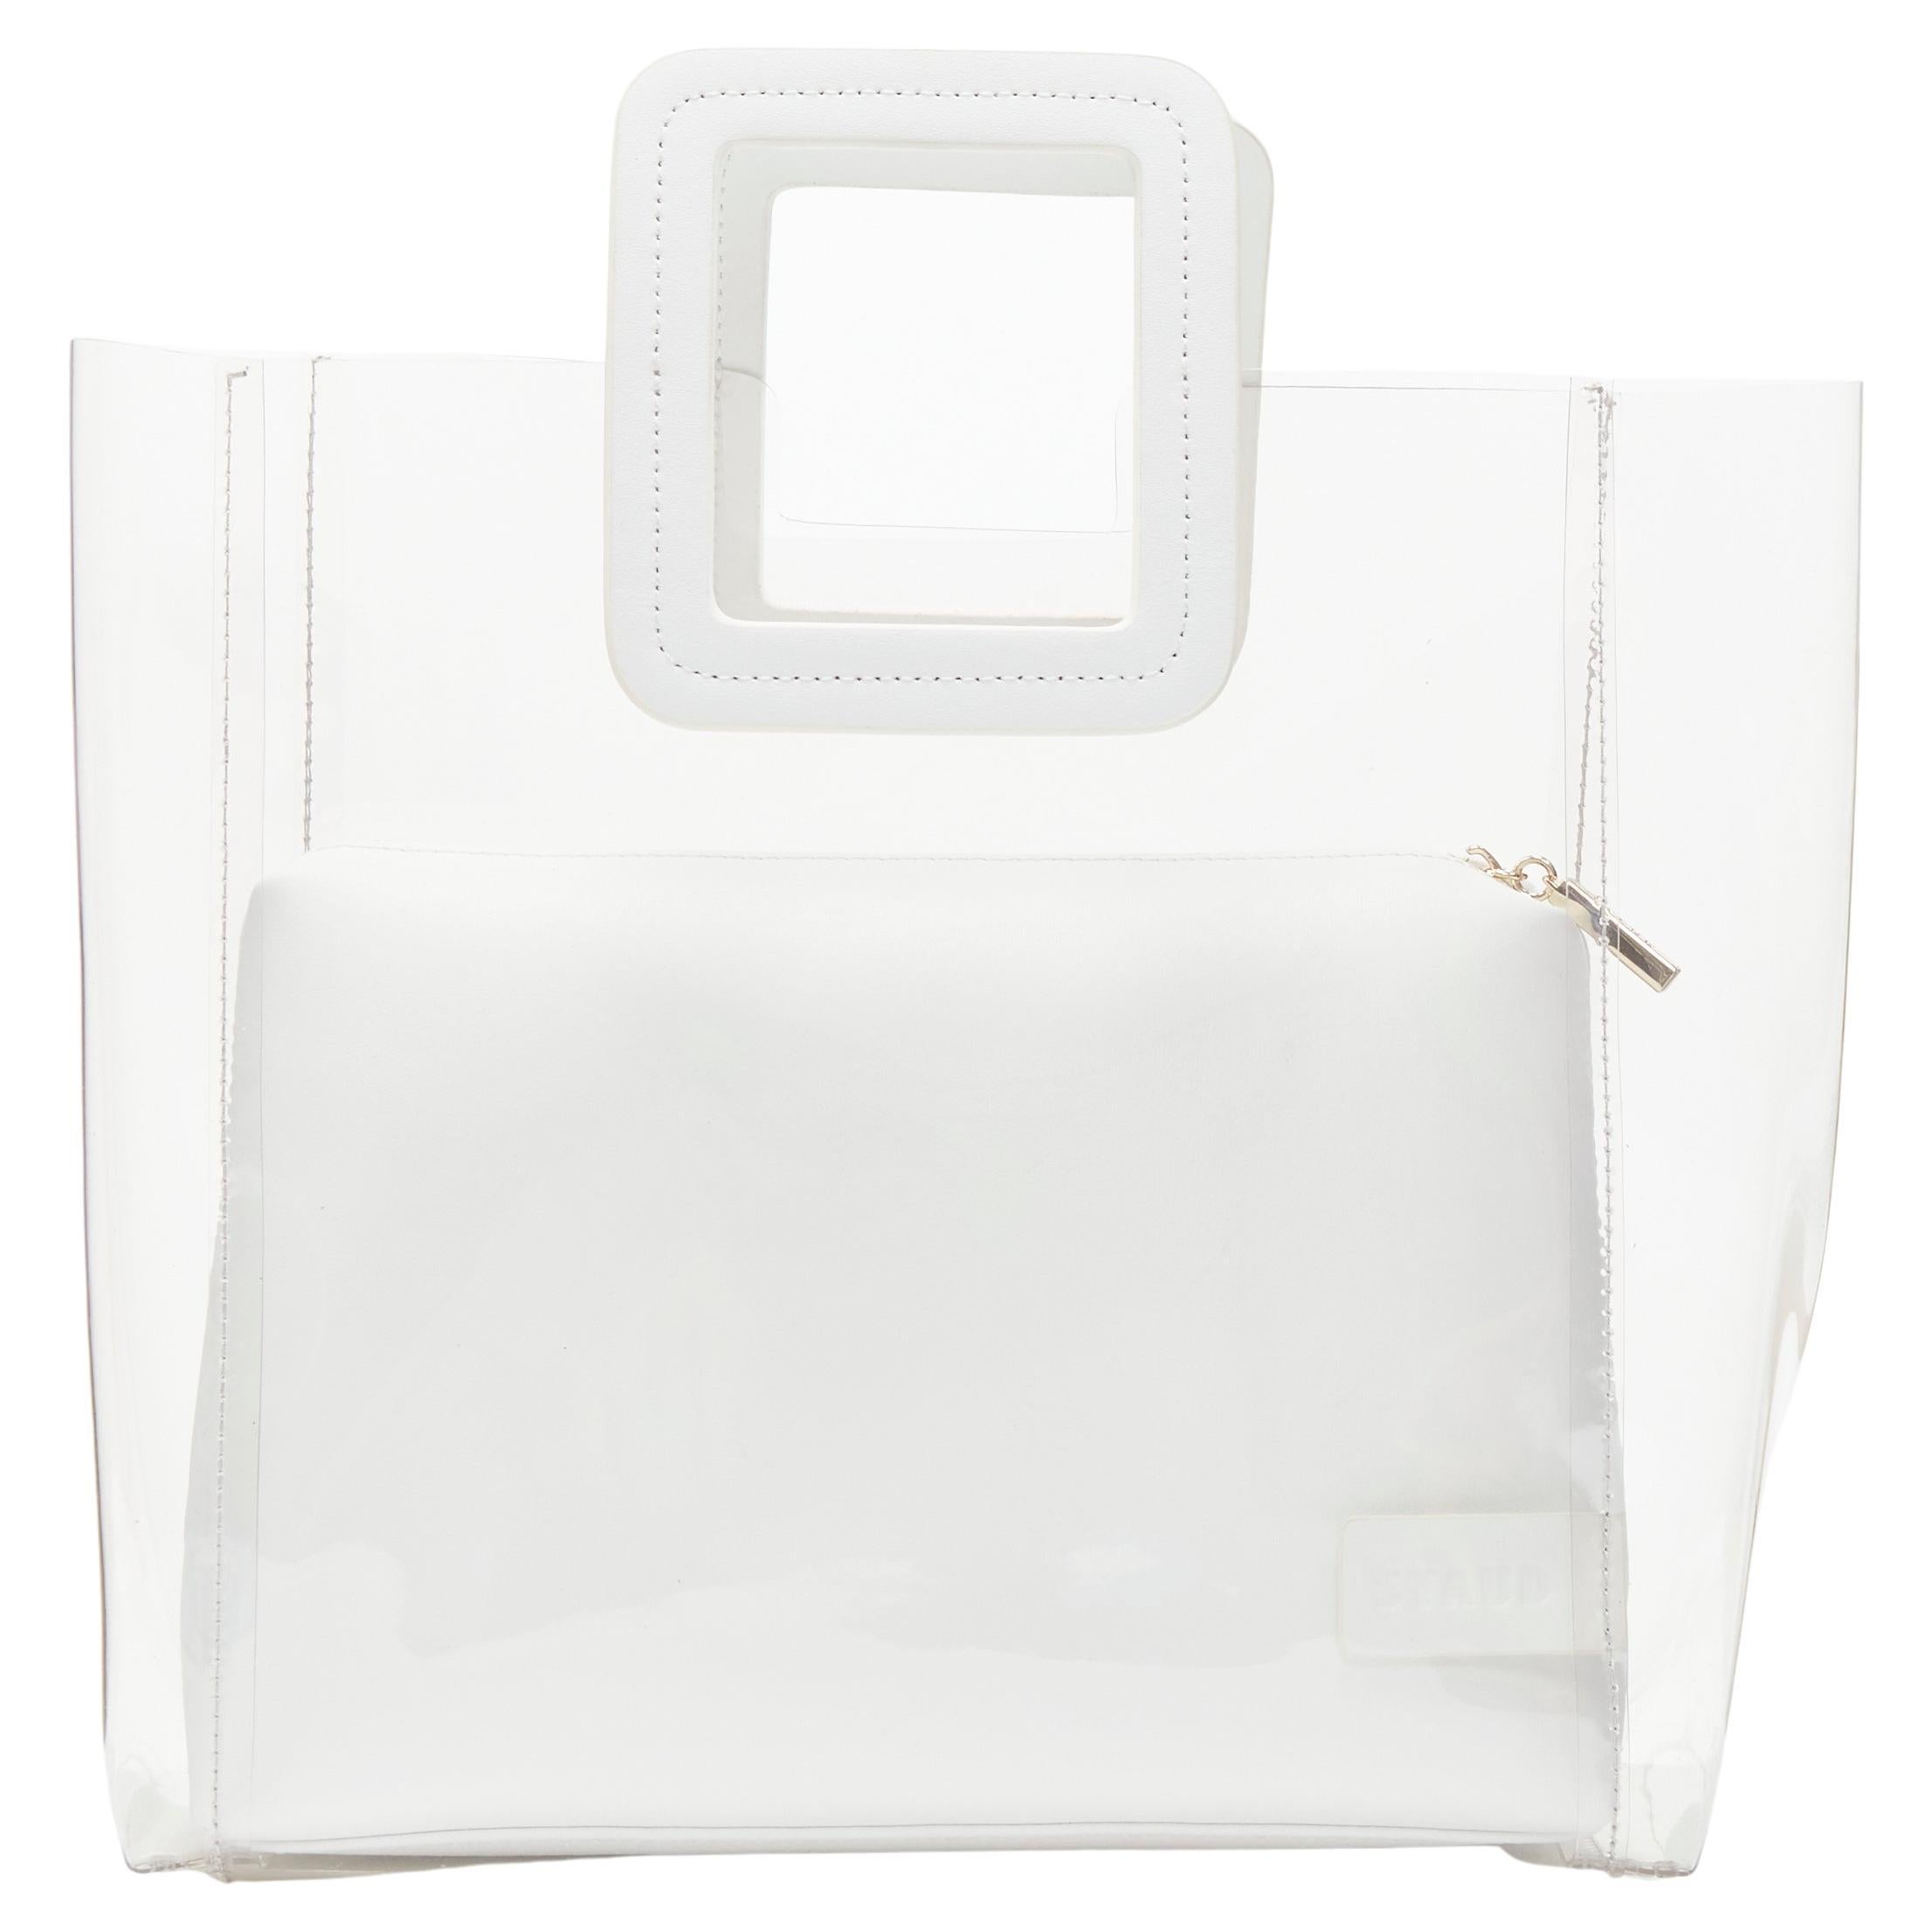 STAUD, Bags, Staud Mini Shirley Bag White Brand New